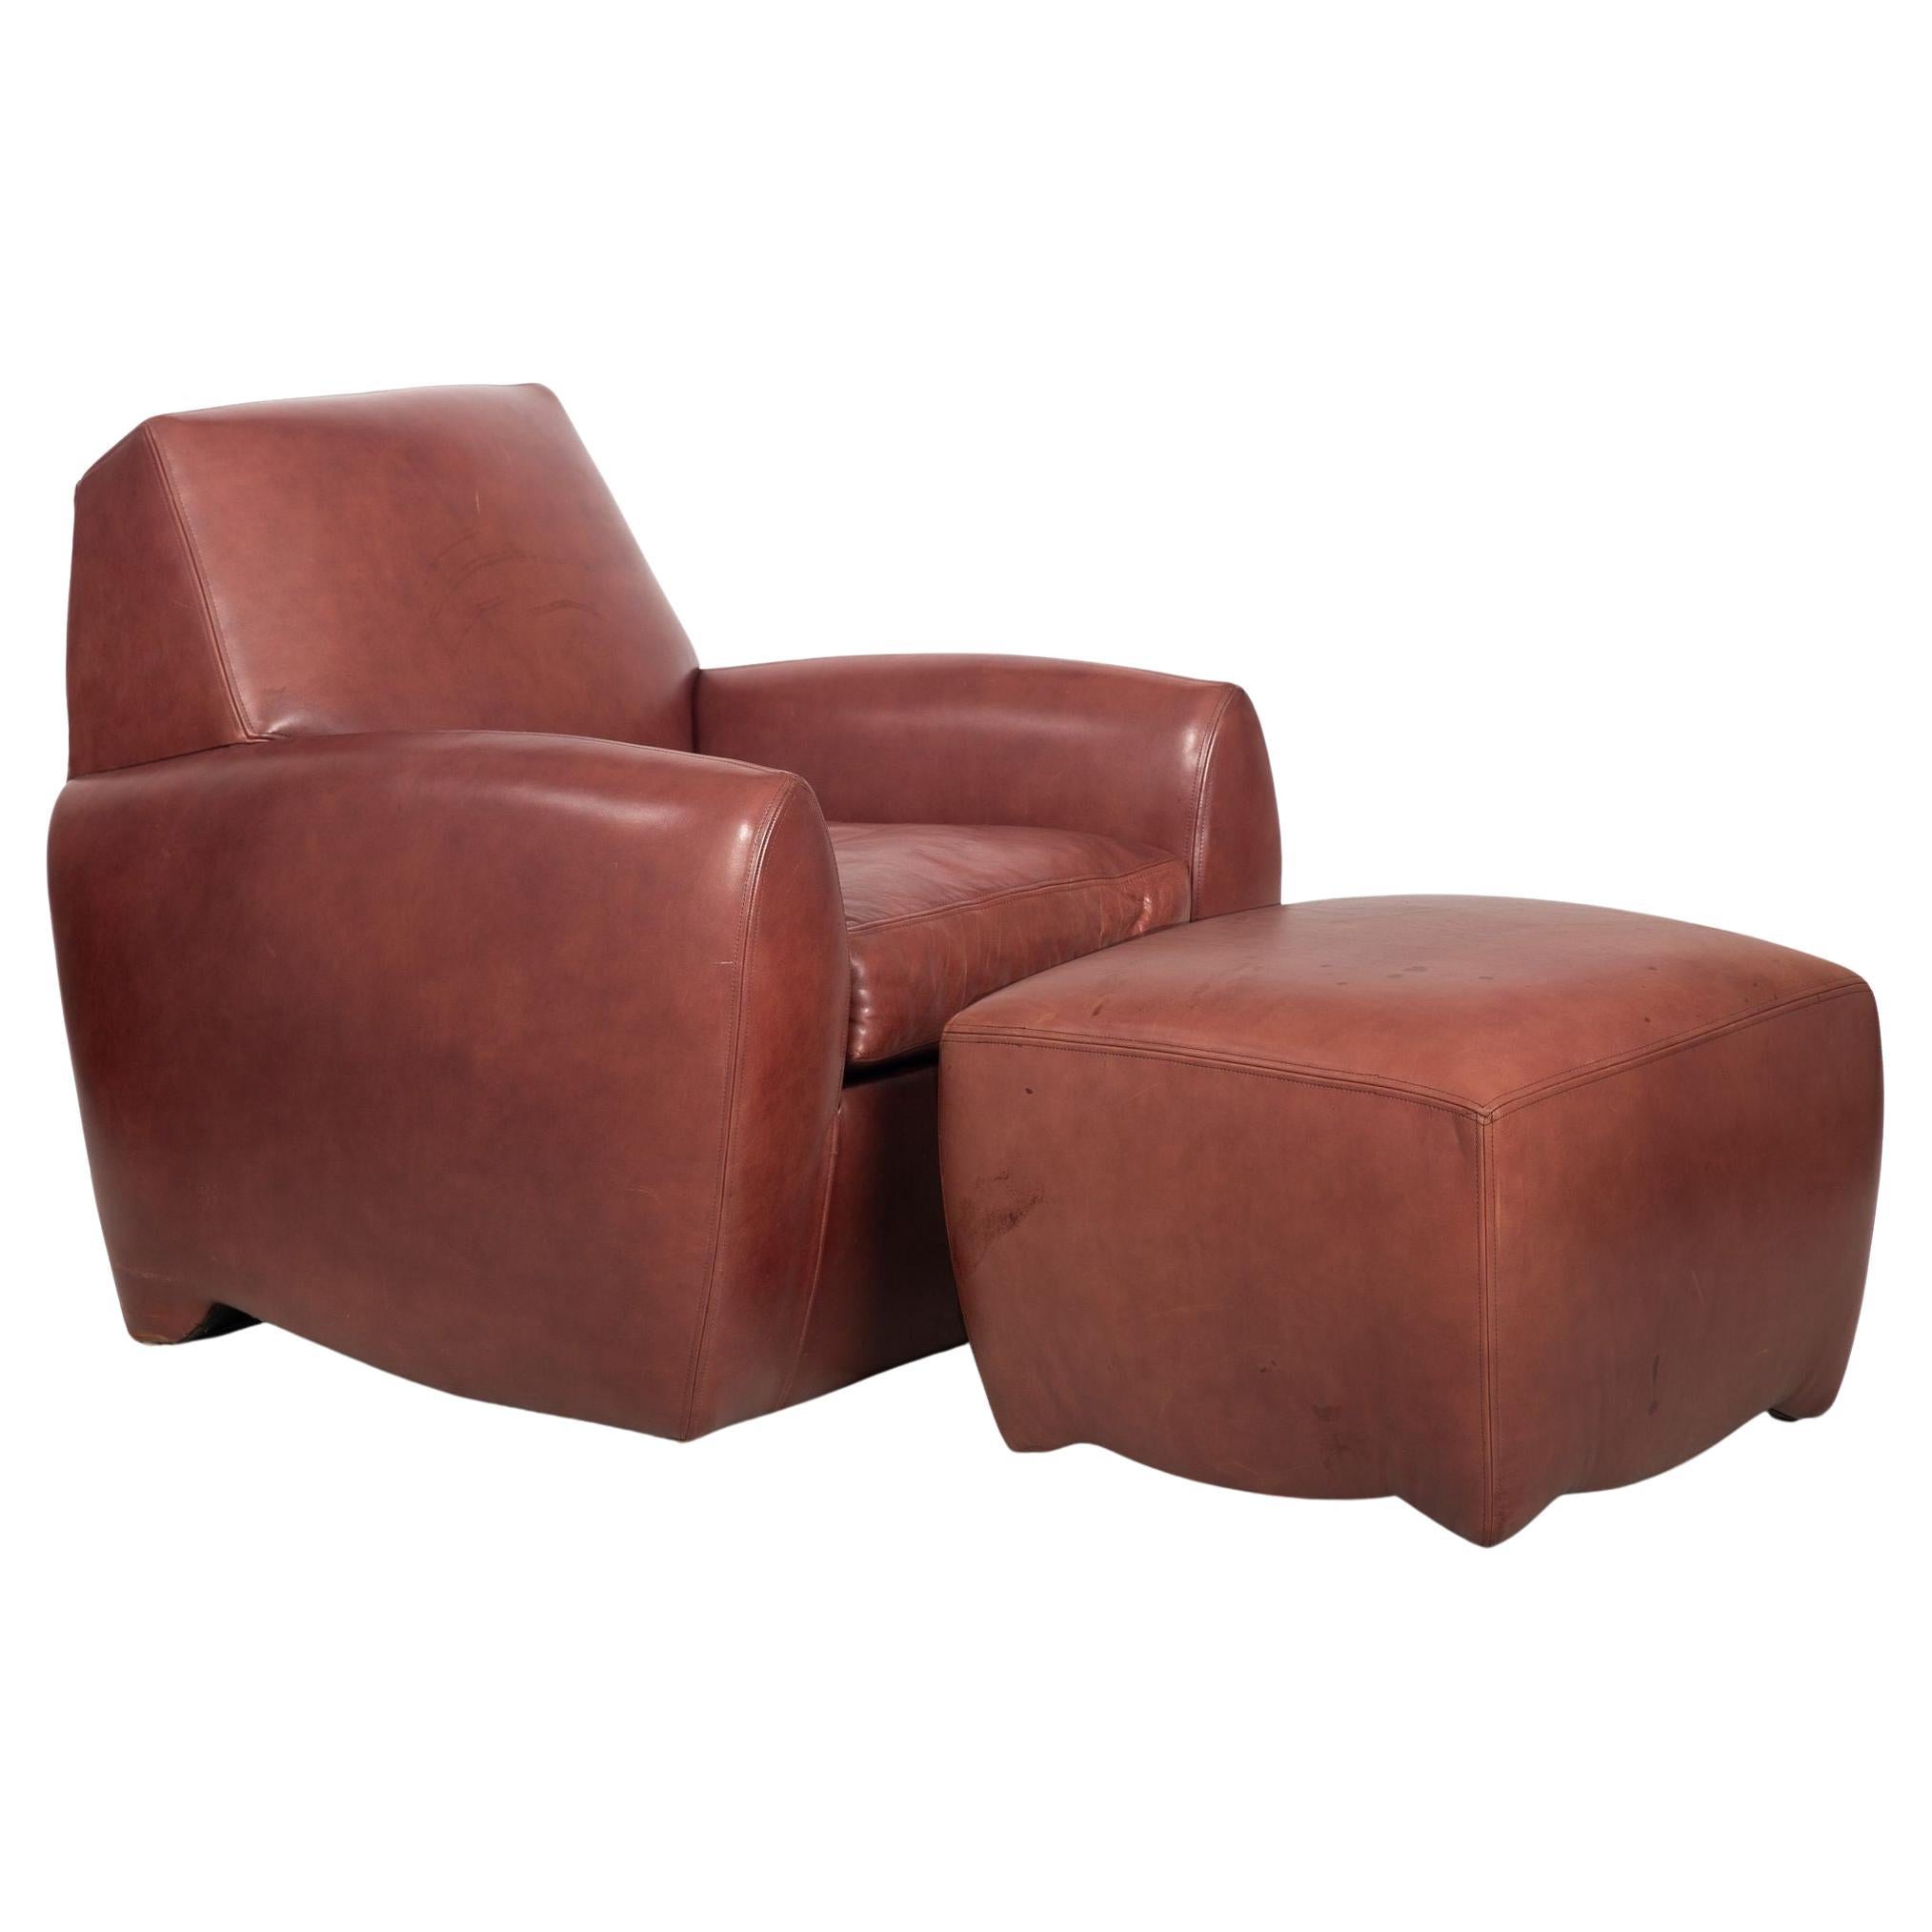 Art Deco Style Leather “Ke-Zu” Club Chair & Ottoman by Dakota Jackson